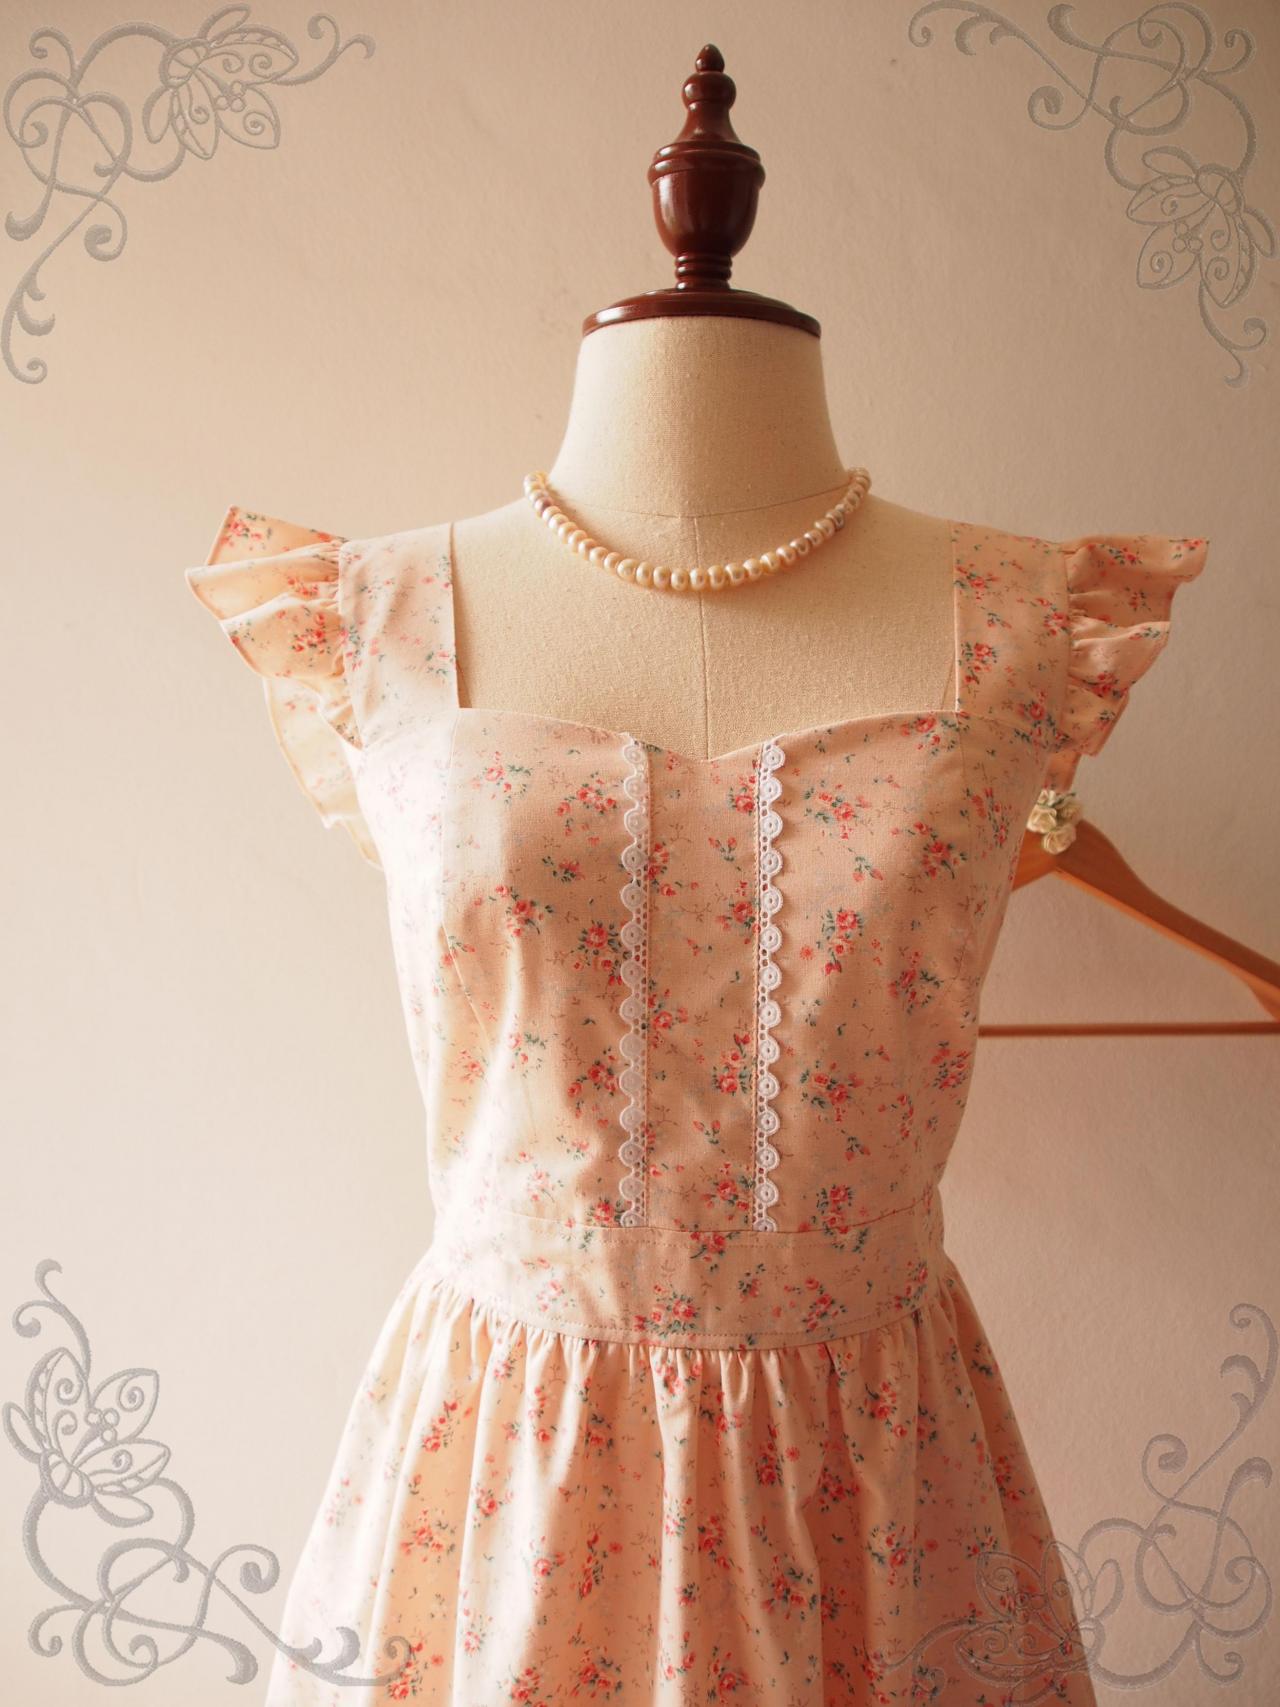 Floral Dress, Peach Dress, Princess Dress, Vintage Floral Dress, Floral Summer Dress, Floral Sundress, - Olivia - Xs-xl